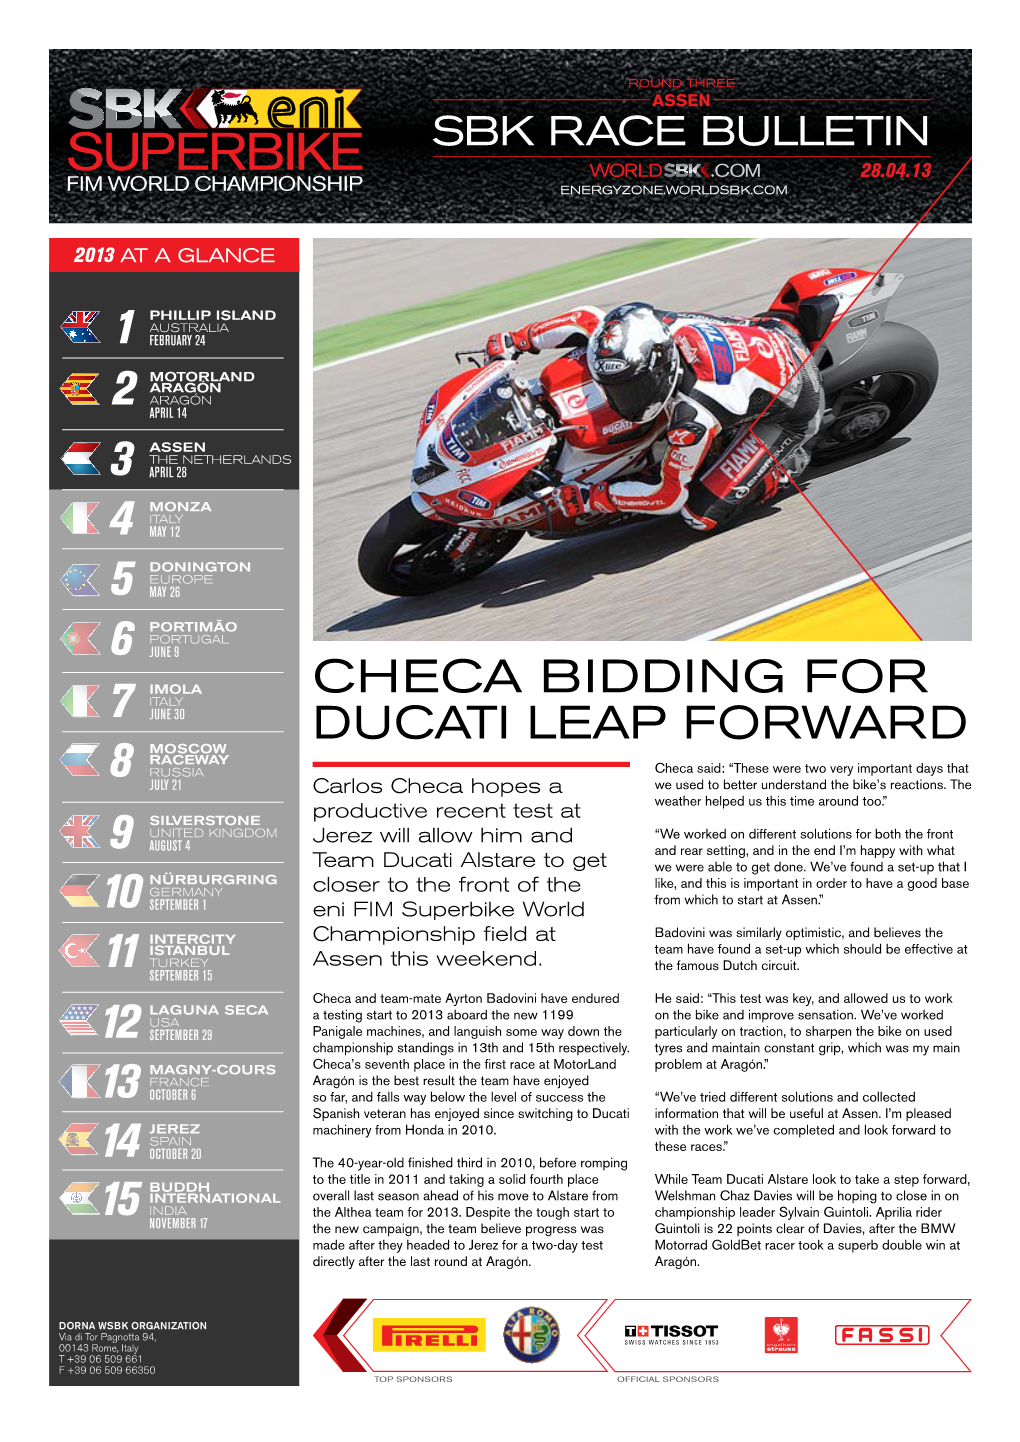 Checa Bidding for Ducati Leap Forward